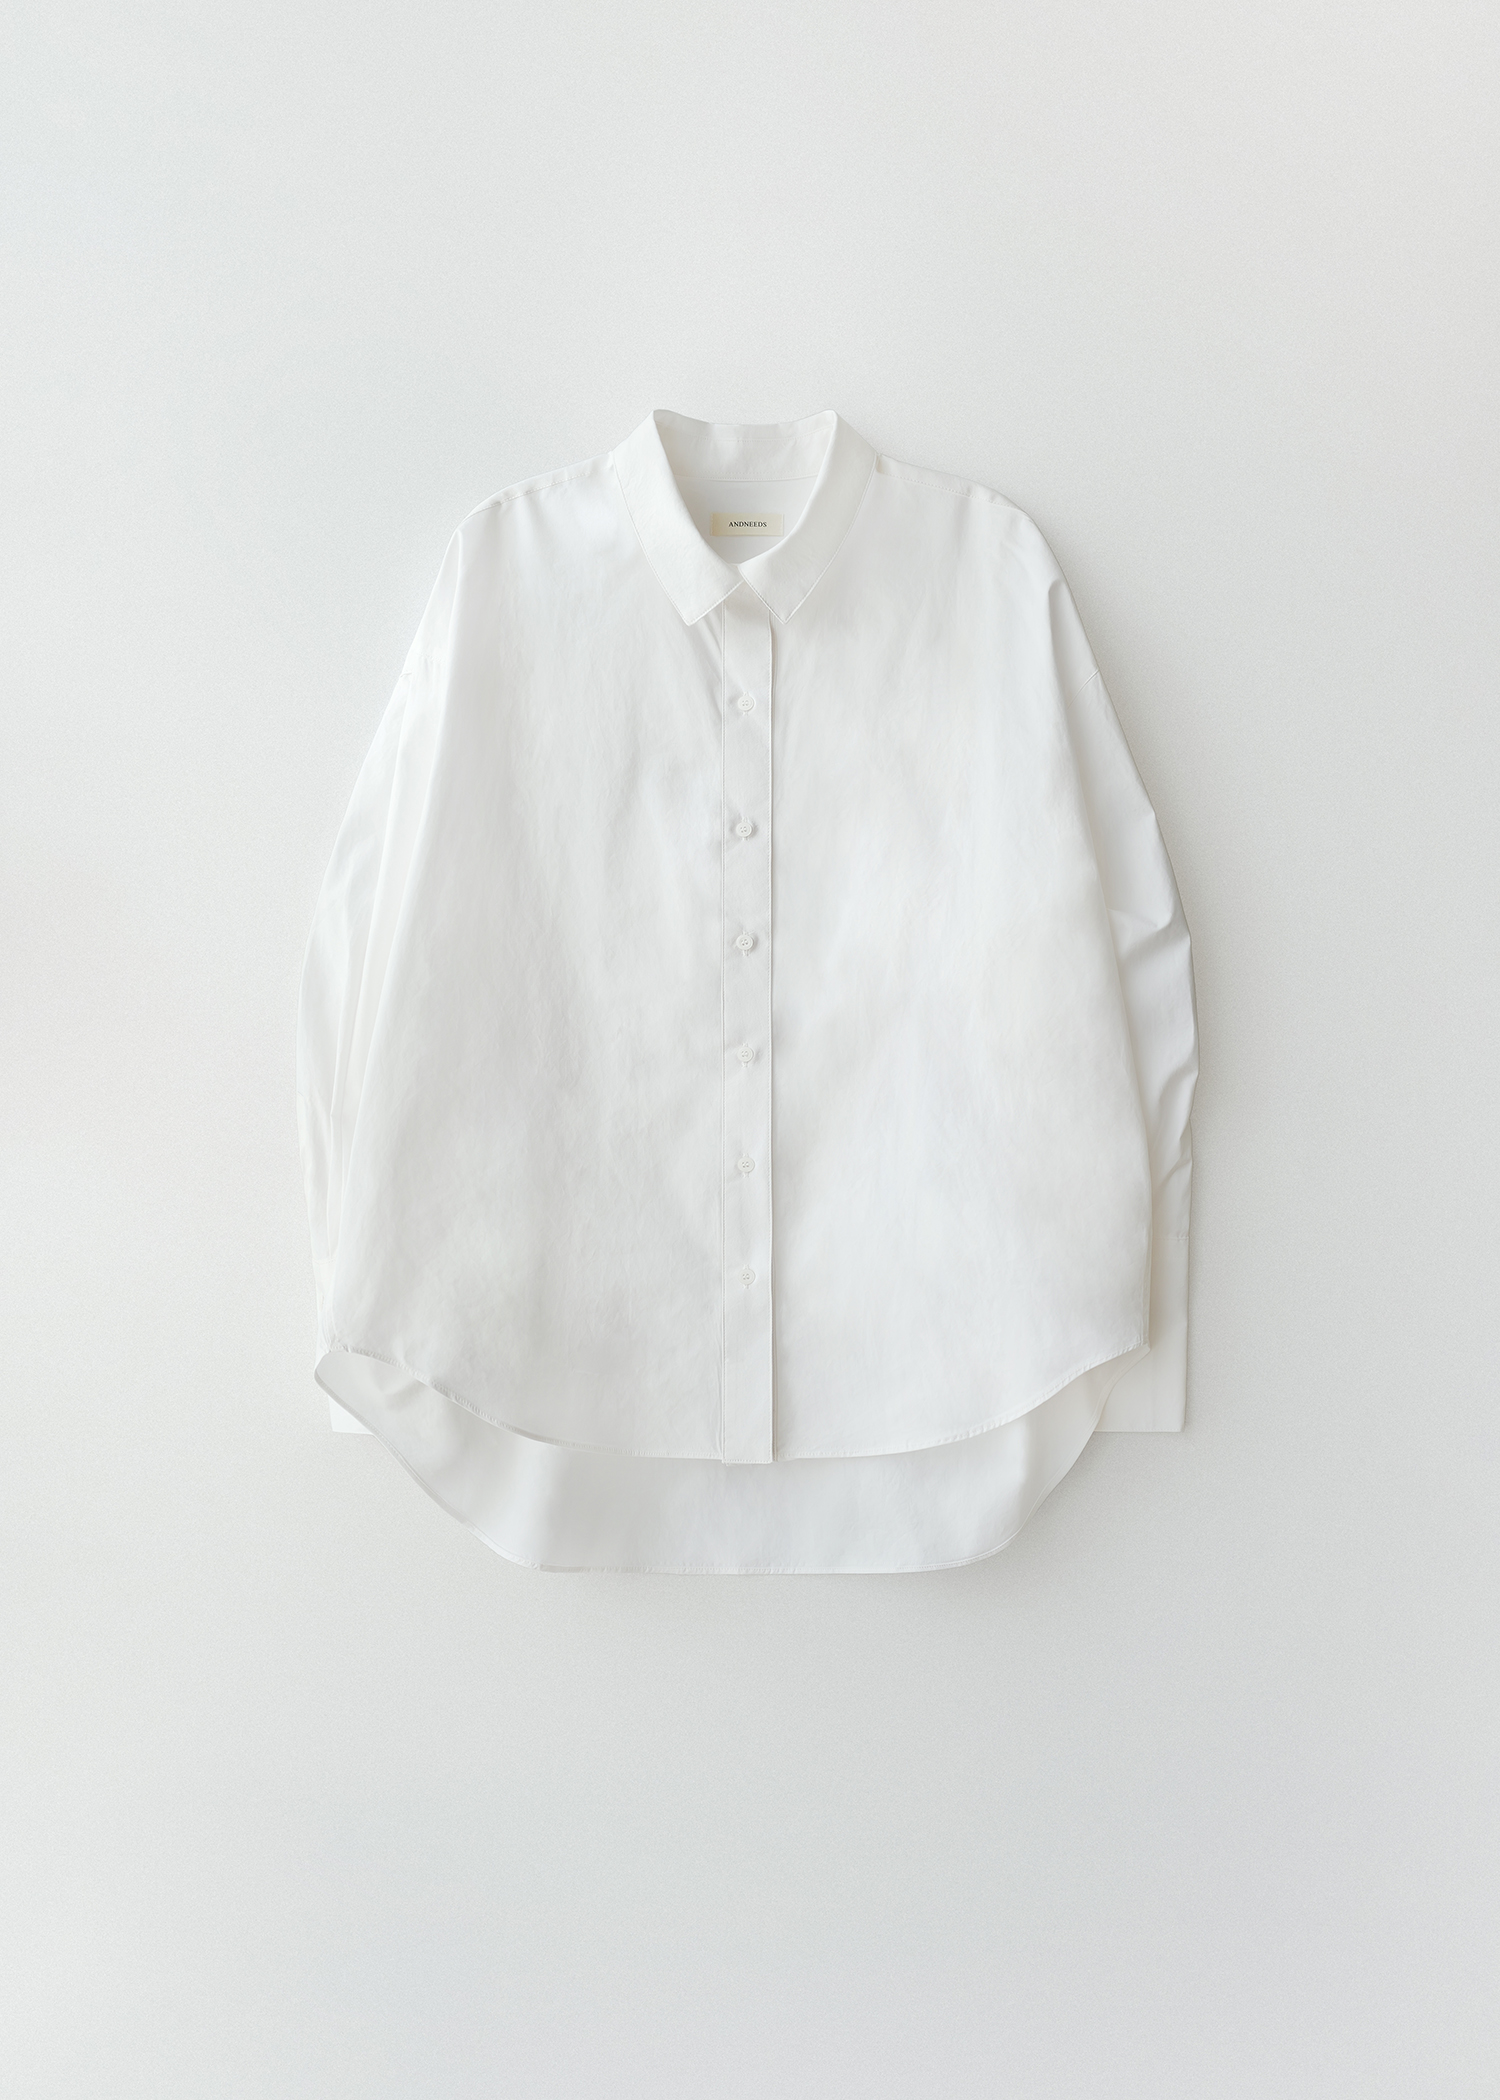 [5/24 순차발송] Loose shirt (white)